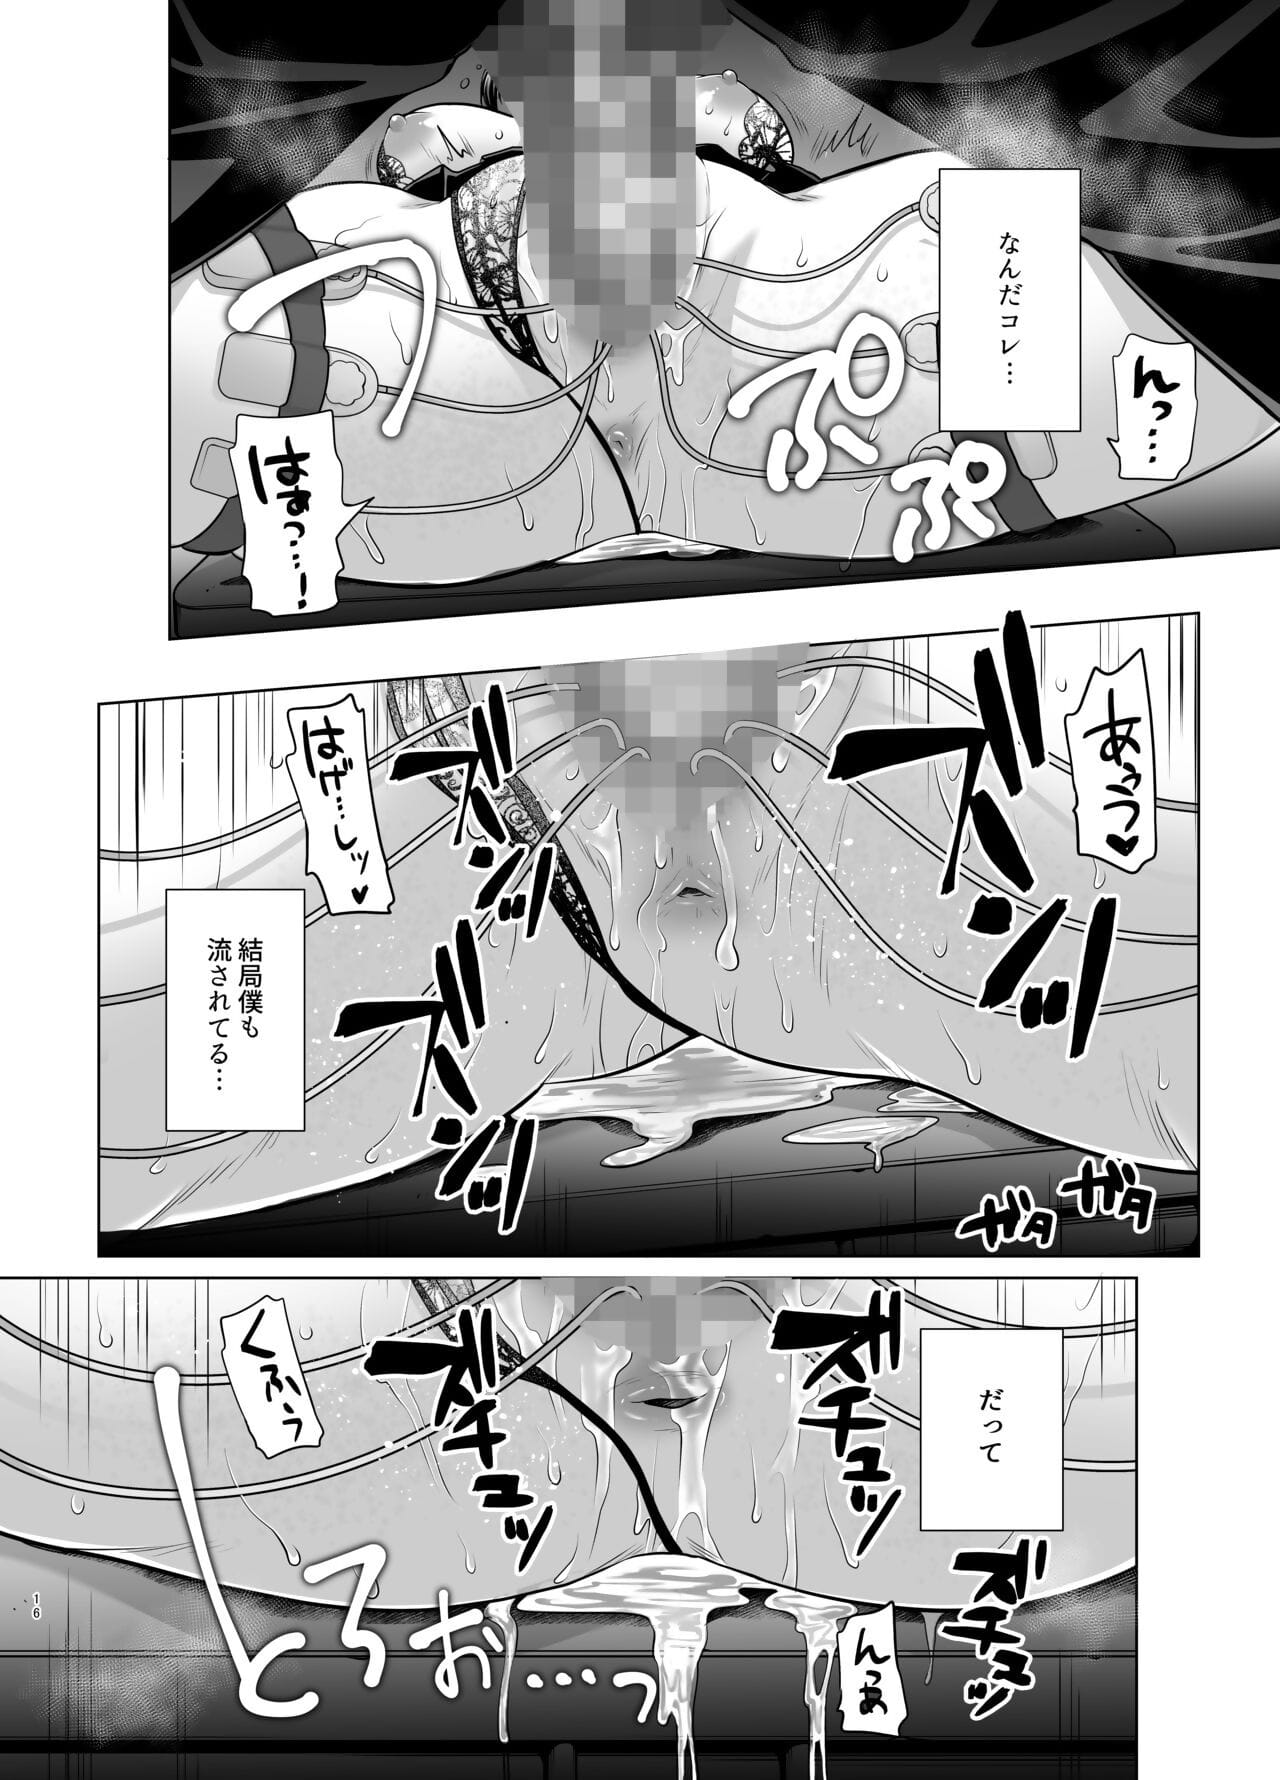 kobihetsurawasetekudasai butaosama. page 1